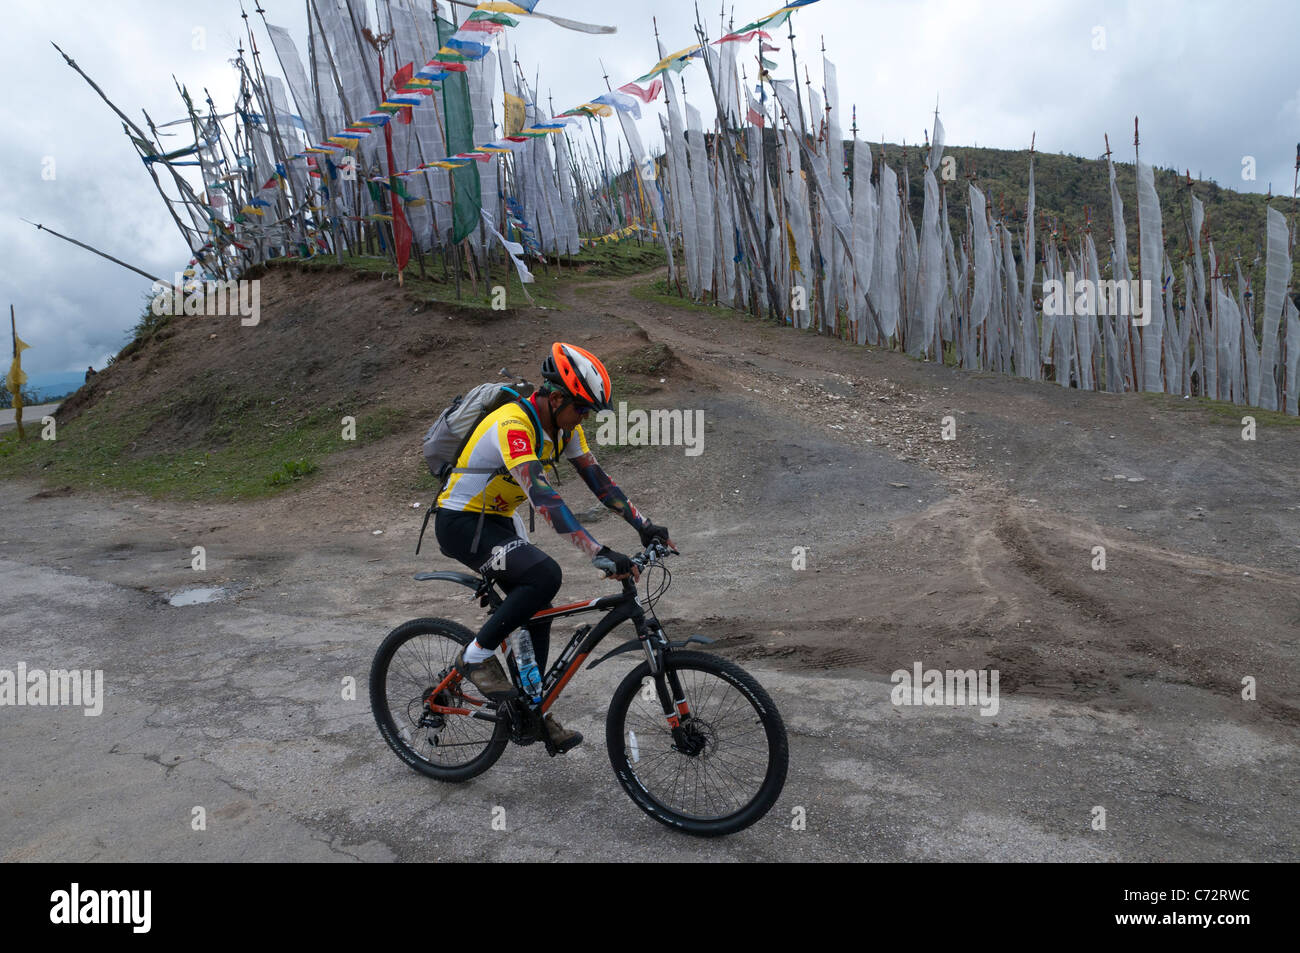 local cycling champion at Chele La pass. paro. bhutan Stock Photo